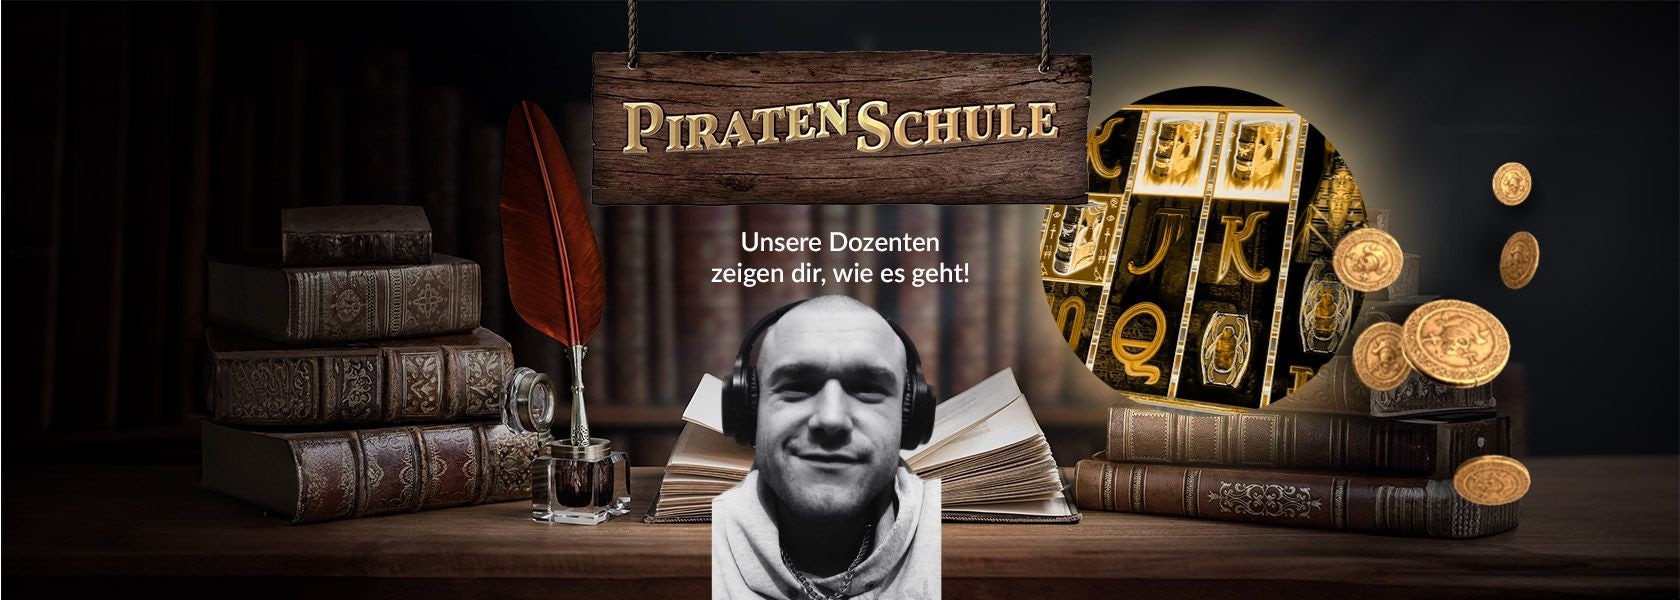 Piraten-Schule-Dan